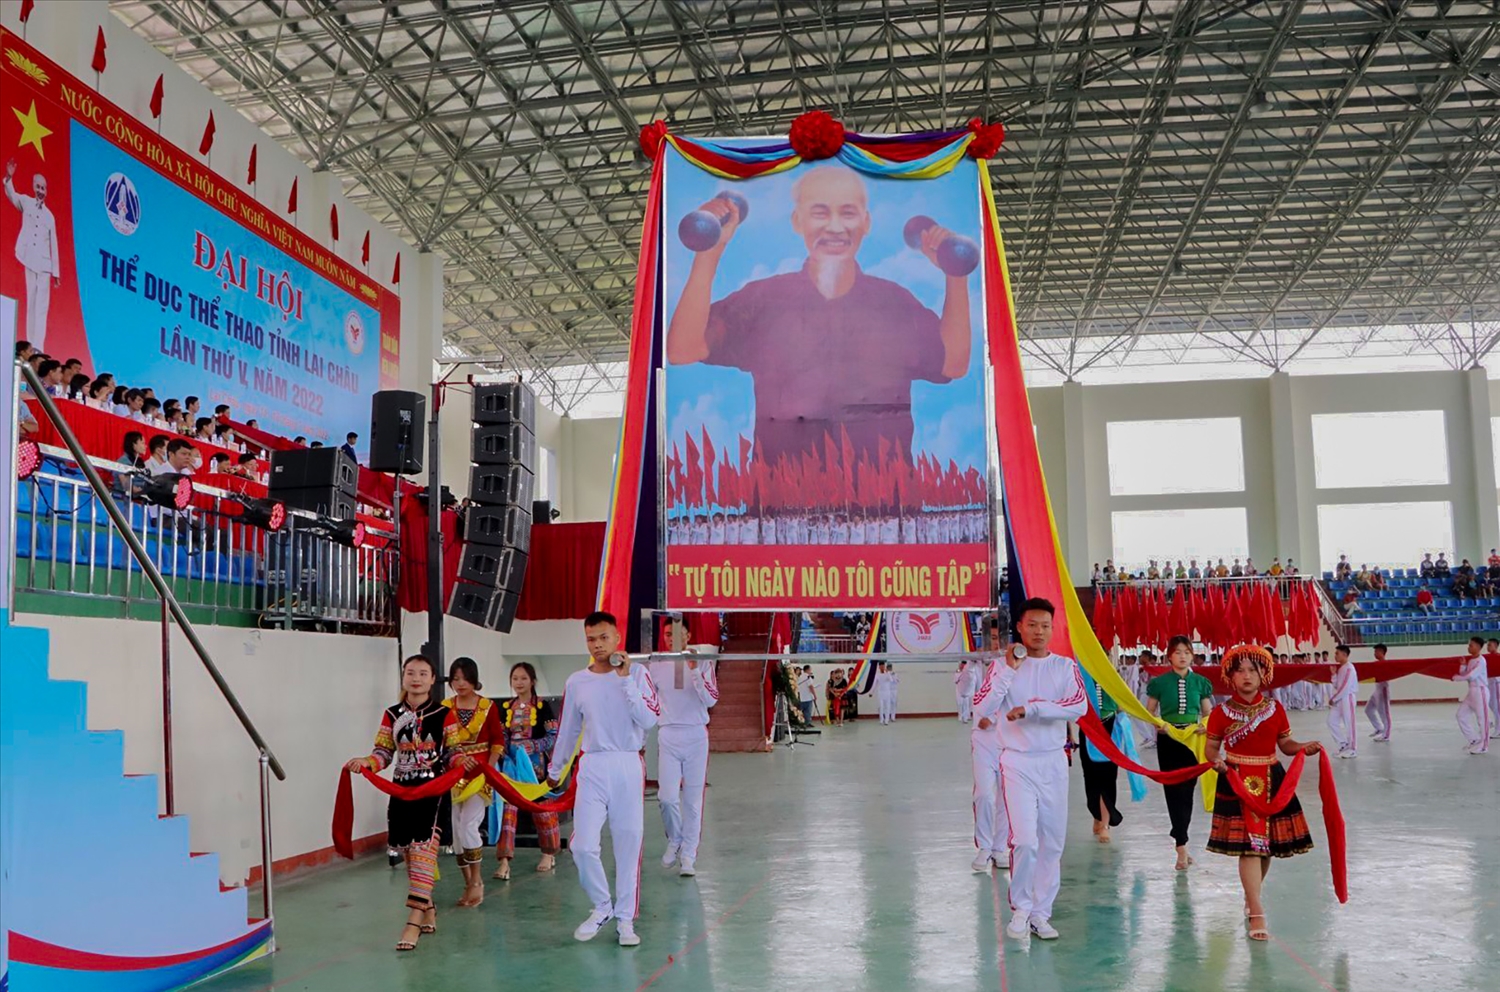 Màn diễu hành chân dung Chủ tịch Hồ Chí Minh - biểu tượng "Đại hội TDTT tỉnh Lai Châu lần thứ V, năm 2022